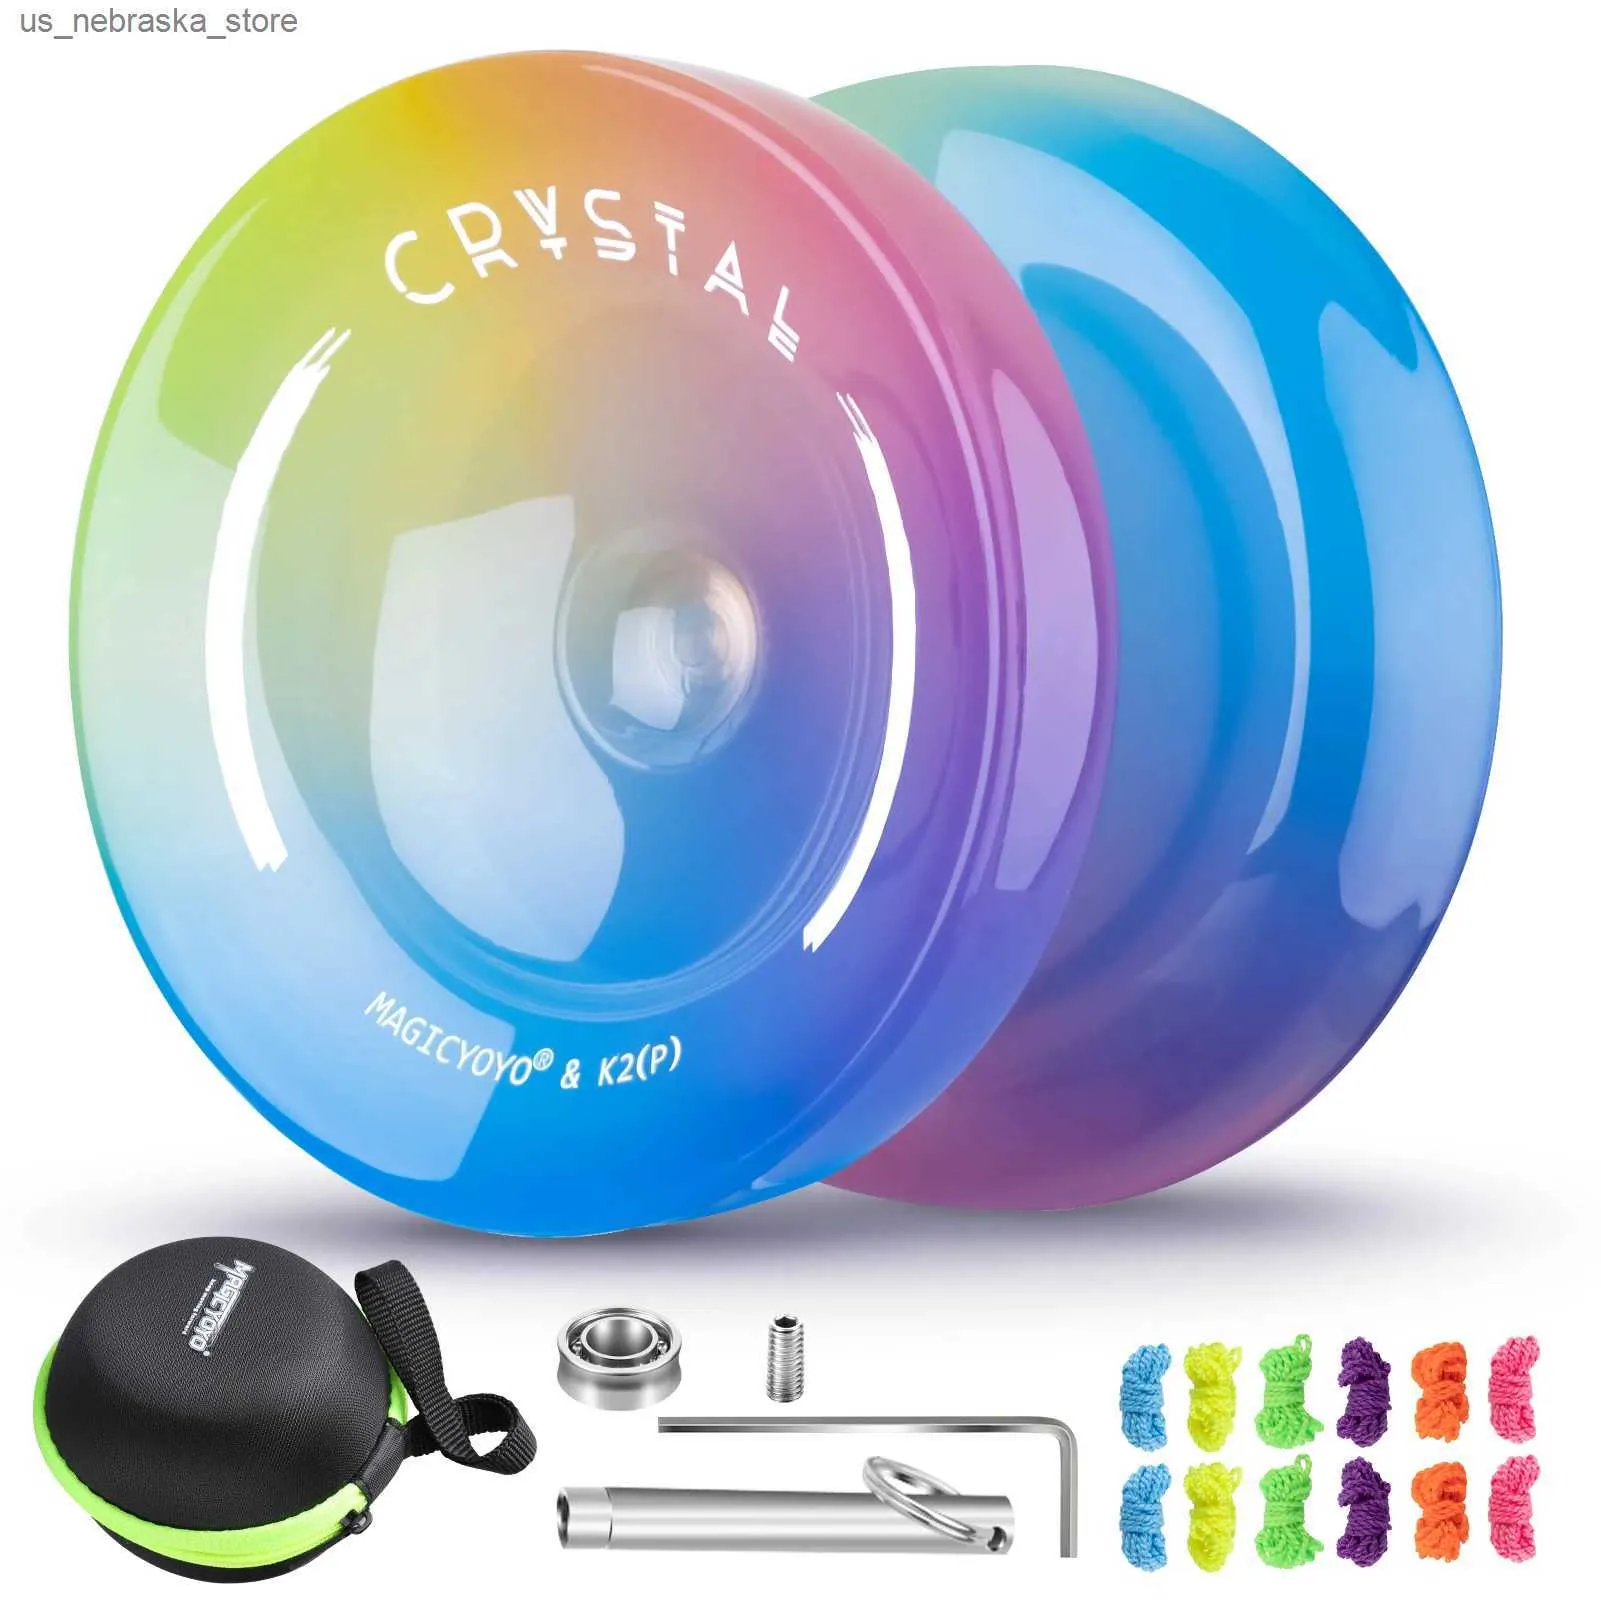 Yoyo Magicyoyo Crystal Yoyo K2 Hem gelişmiş hem de tepkisiz yoyo uygulamaları için tasarlanmış yeni başlayanlar ve çocuklar için profesyonel bir duyarlı yoyo q240418